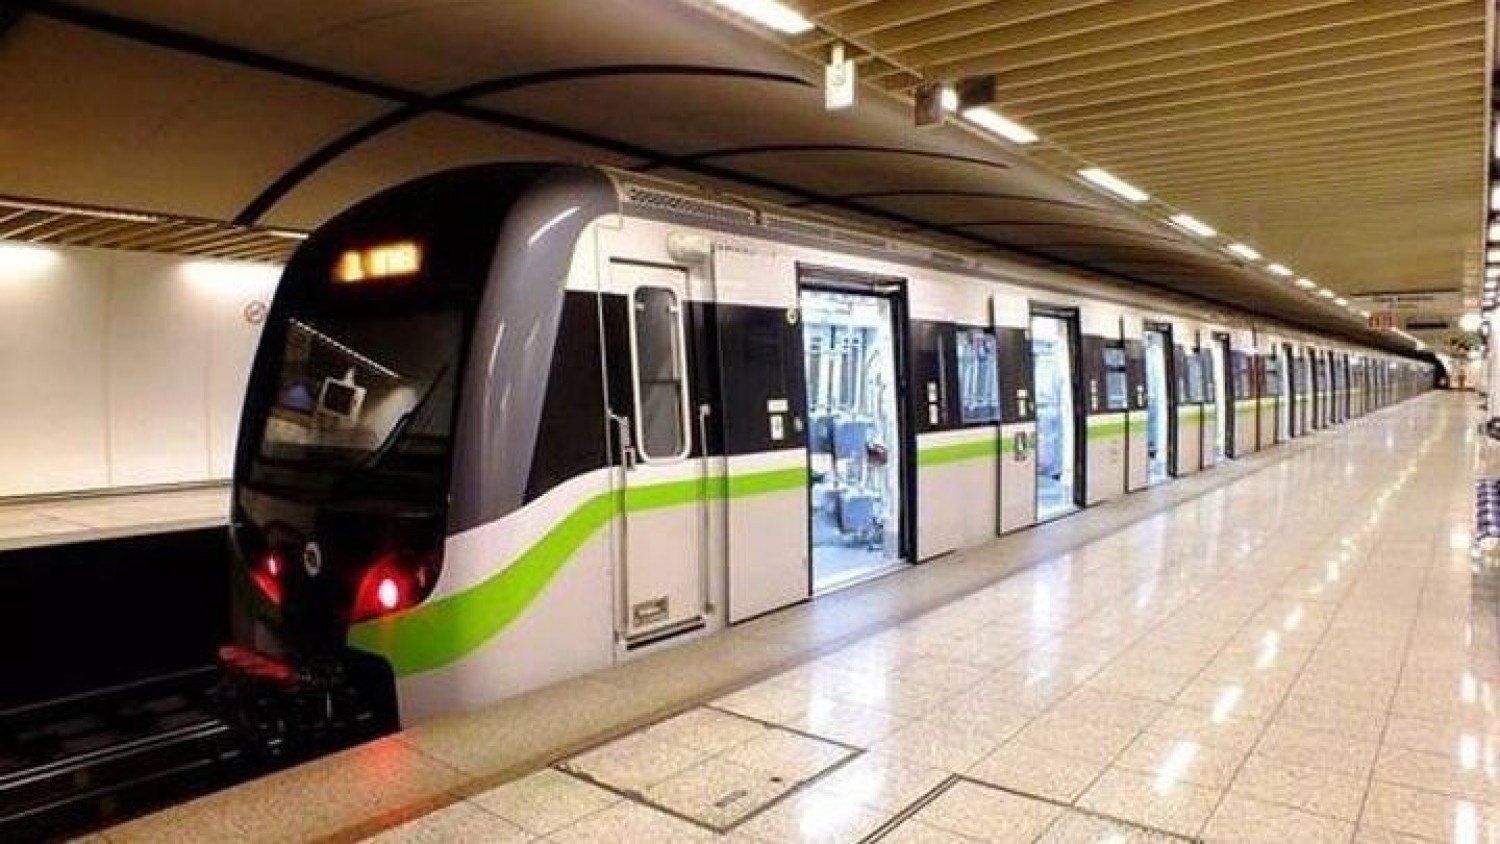 Θεσσαλονίκη: Ολοκληρώνεται η διάνοιξη των σηράγγων του μετρό